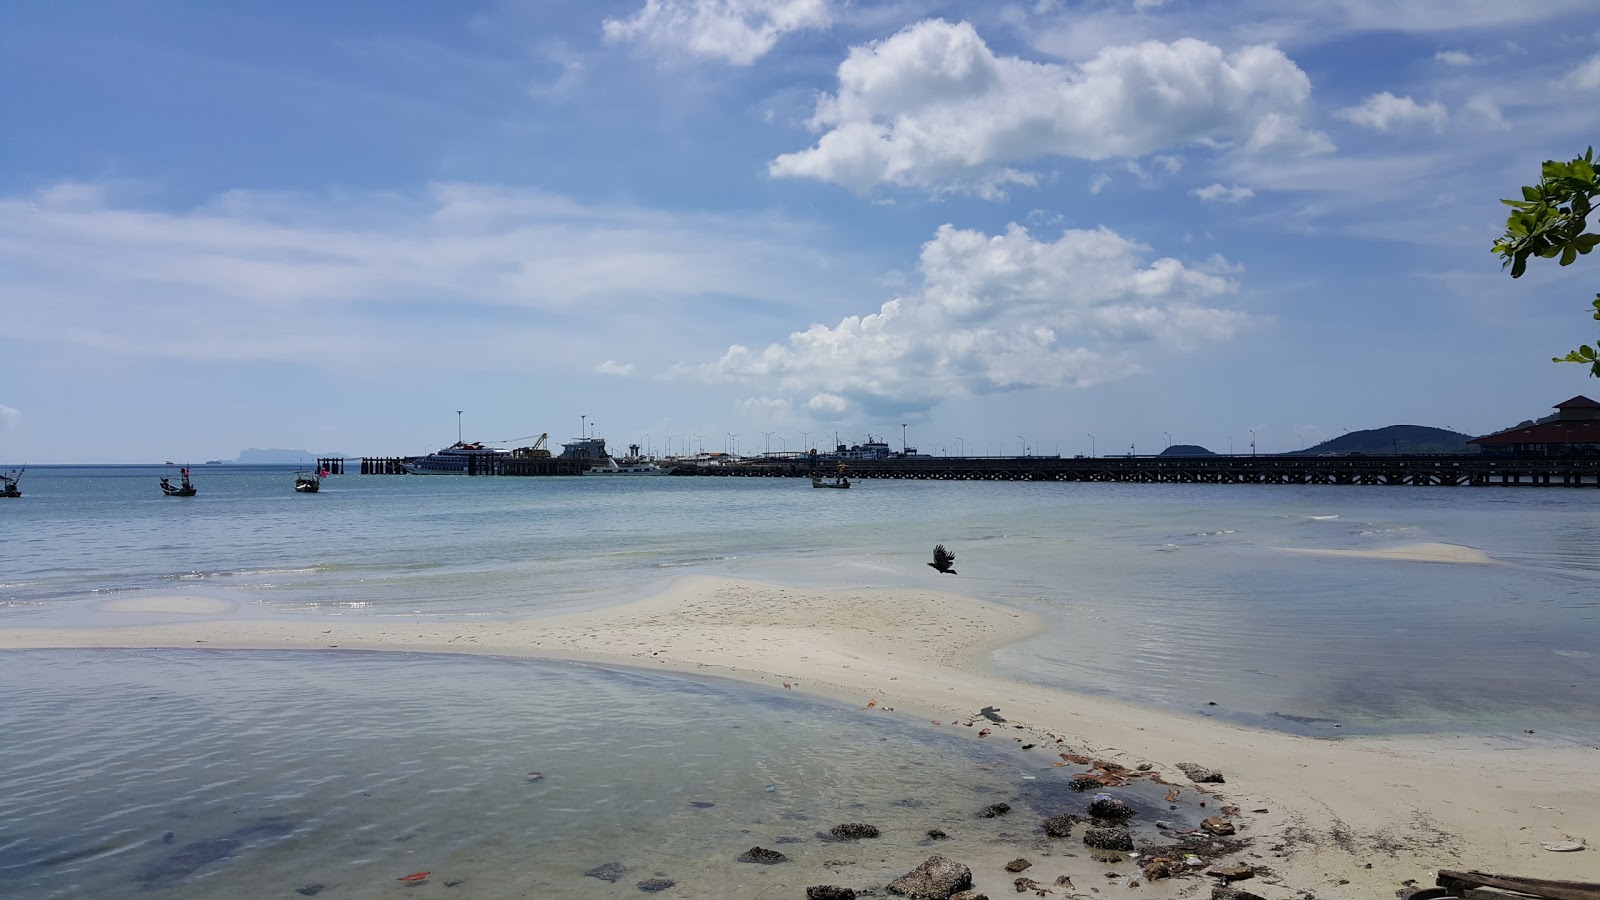 Fotografie cu Nathon Beach - locul popular printre cunoscătorii de relaxare